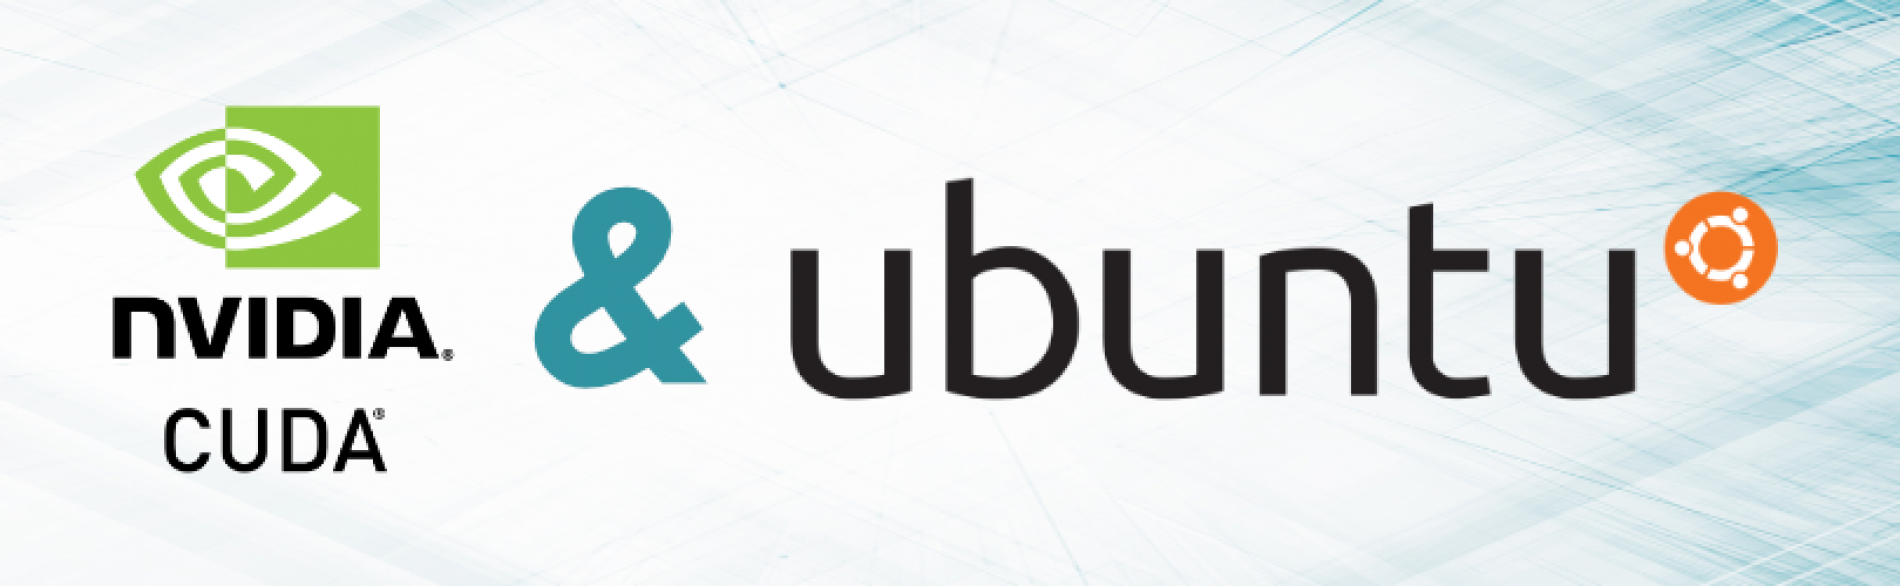 Instalação do Cuda 9 em distribuições Linux baseadas no Ubuntu